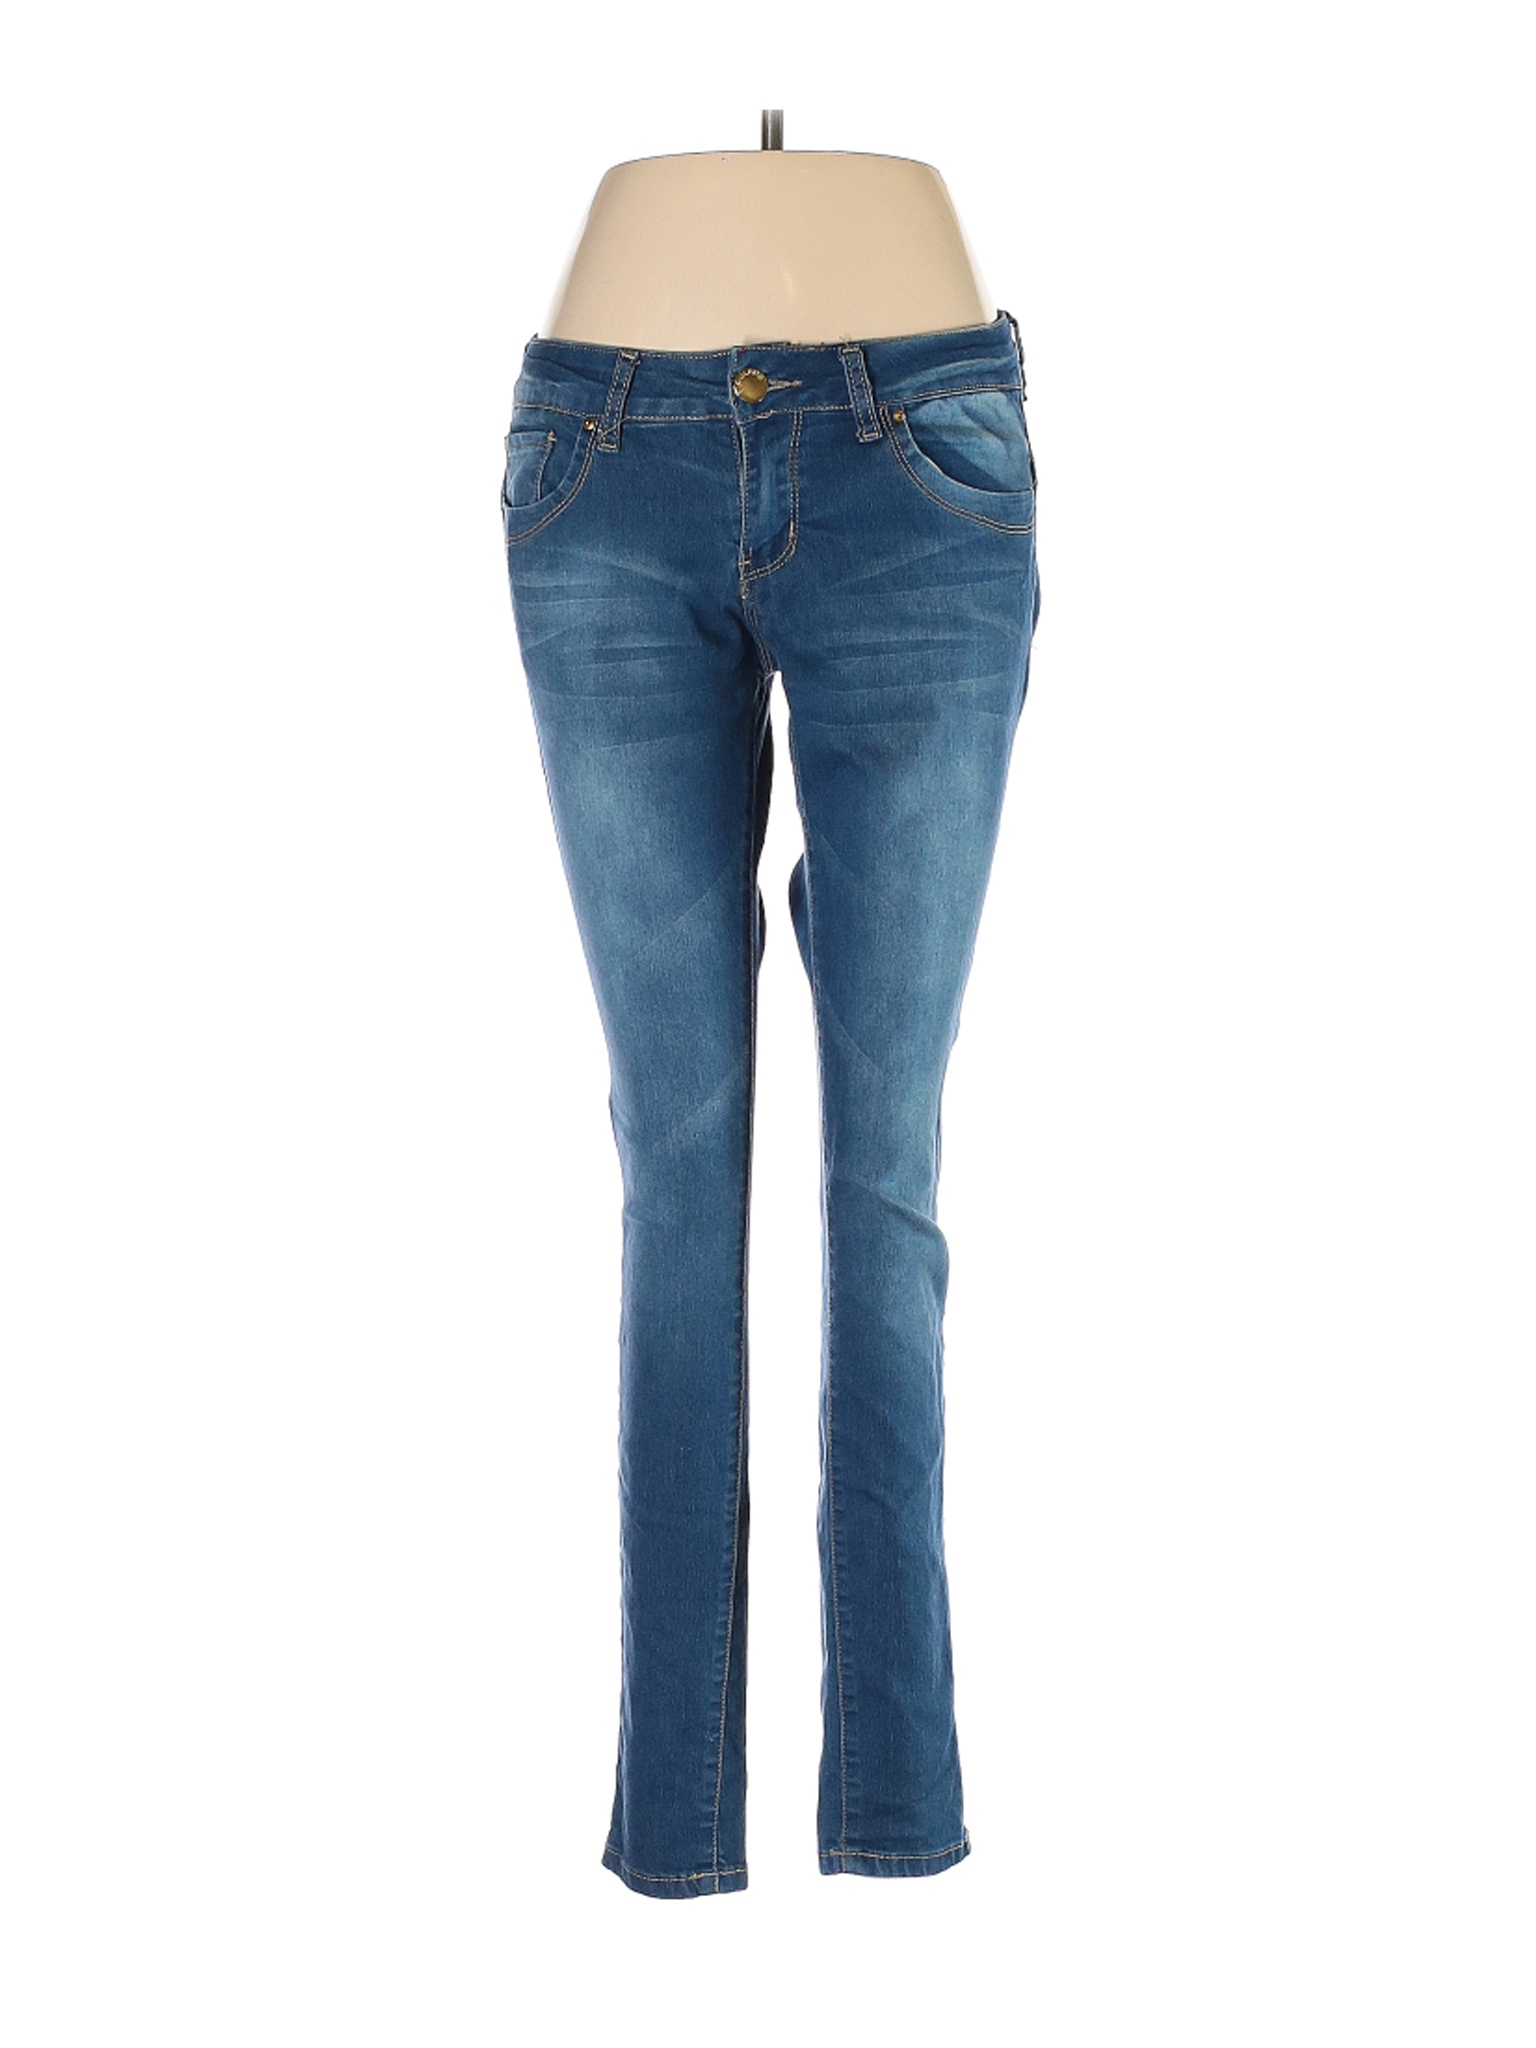 VIP Jeans Women Blue Jeans 7 | eBay